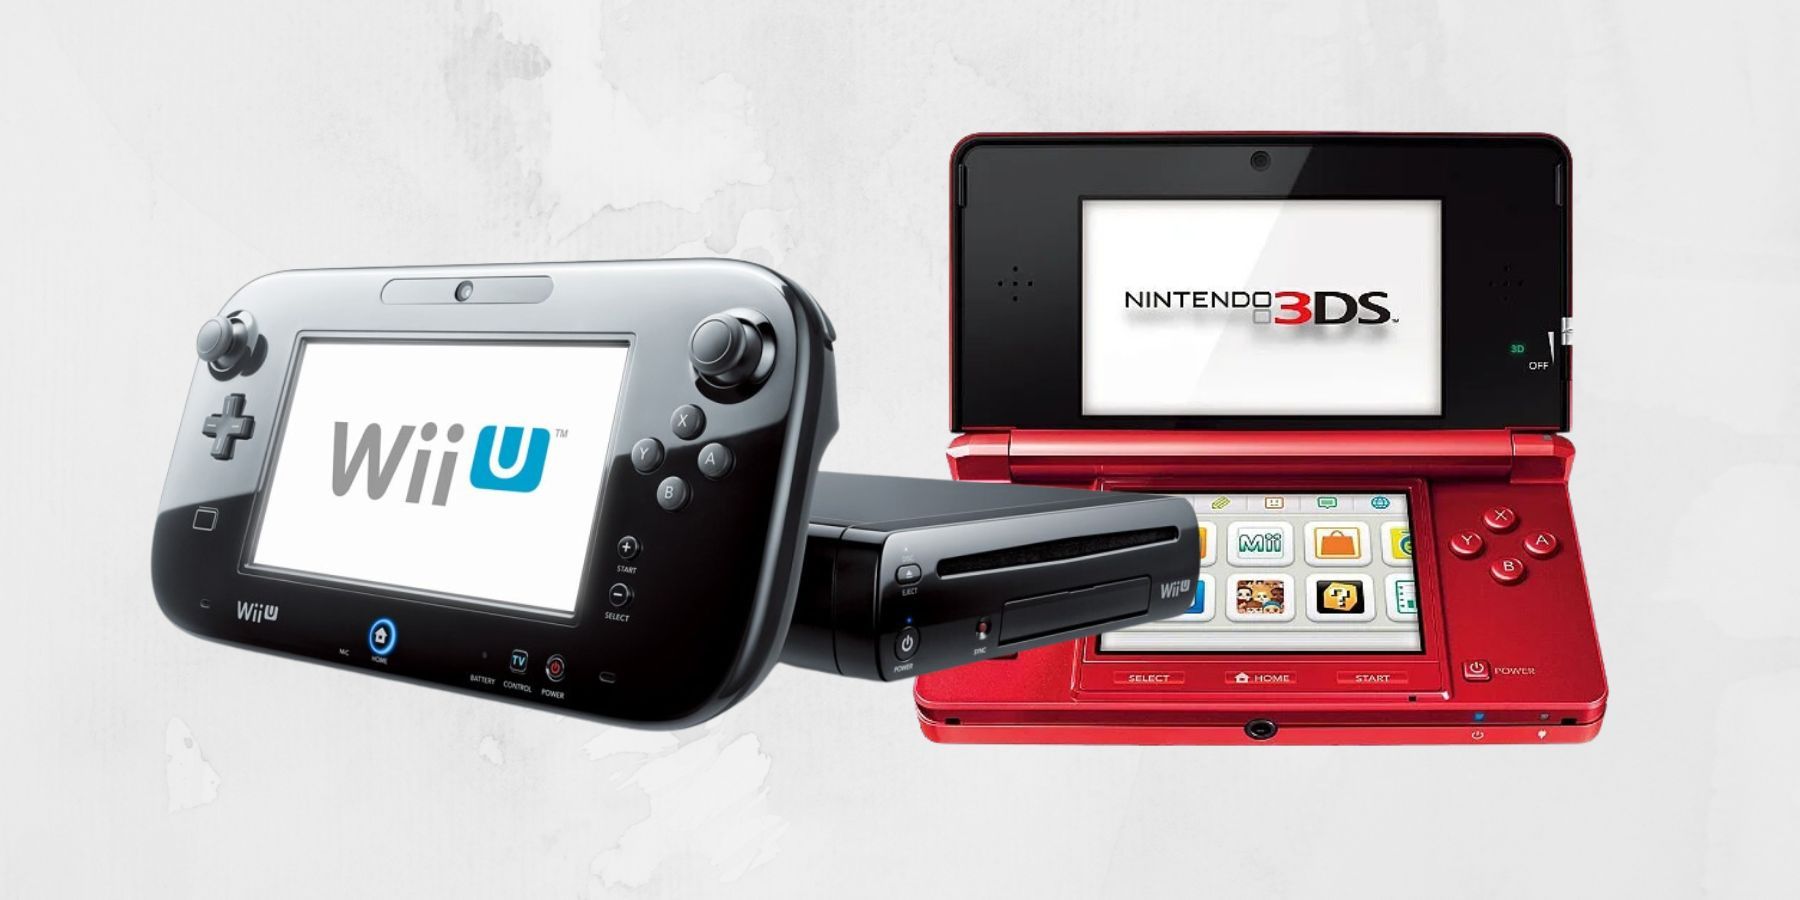 Поклонники Nintendo получили баллы за сохранение игры до отключения  серверов 3DS и Wii U - xpLa